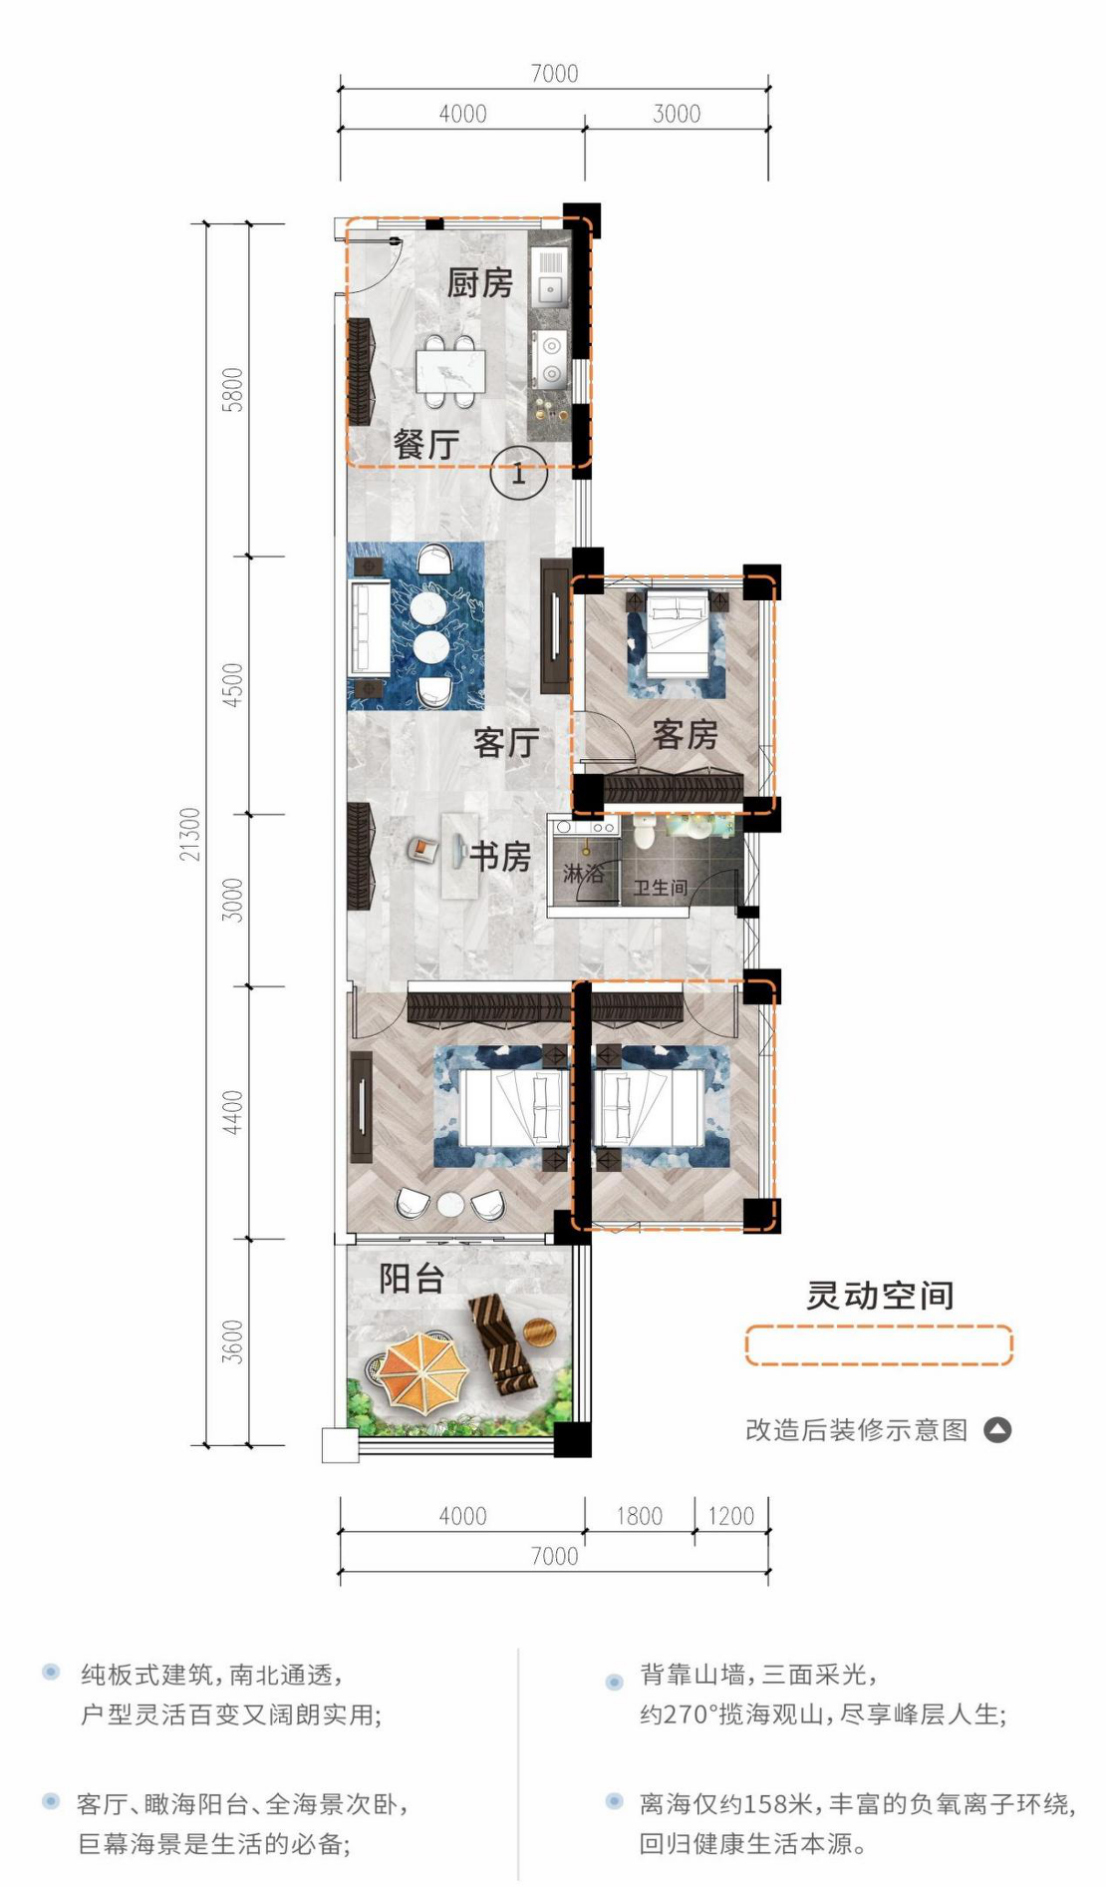 高层 01/10户型 建筑面积82㎡ 3房2厅1卫 （使用面积122㎡）